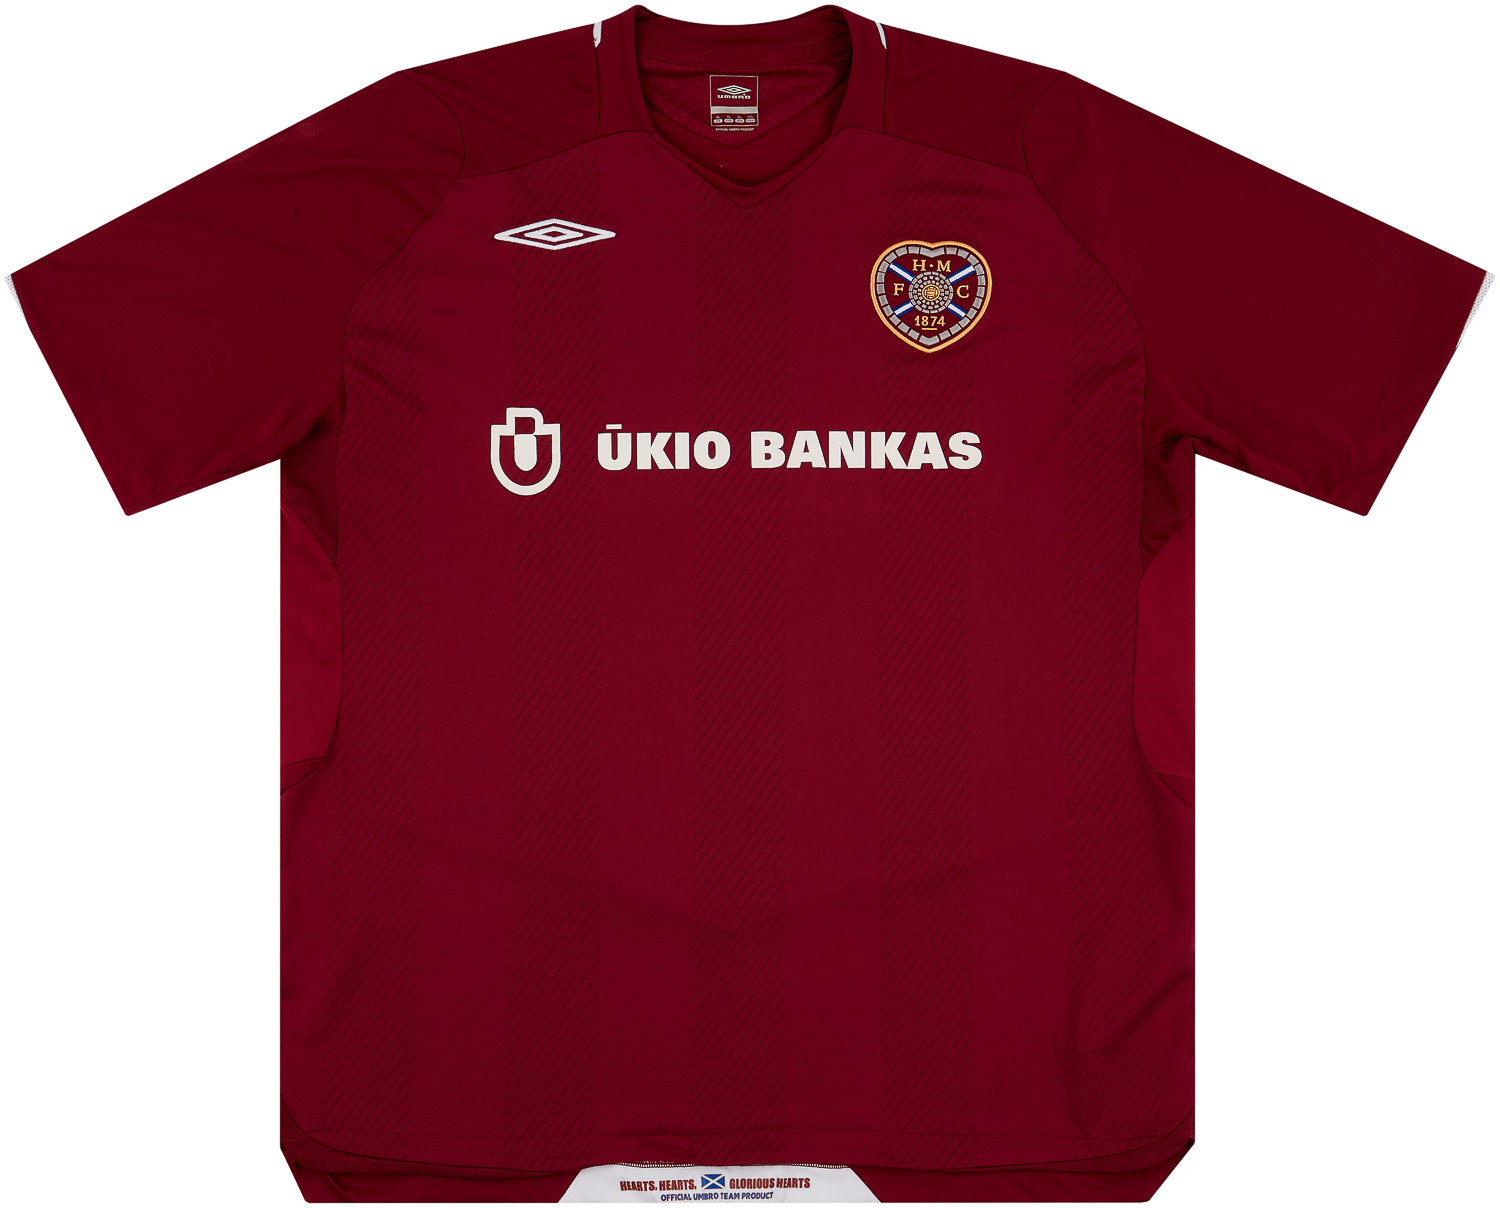 2008-09 Heart Of Midlothian (Hearts) Home Shirt - 8/10 - ()